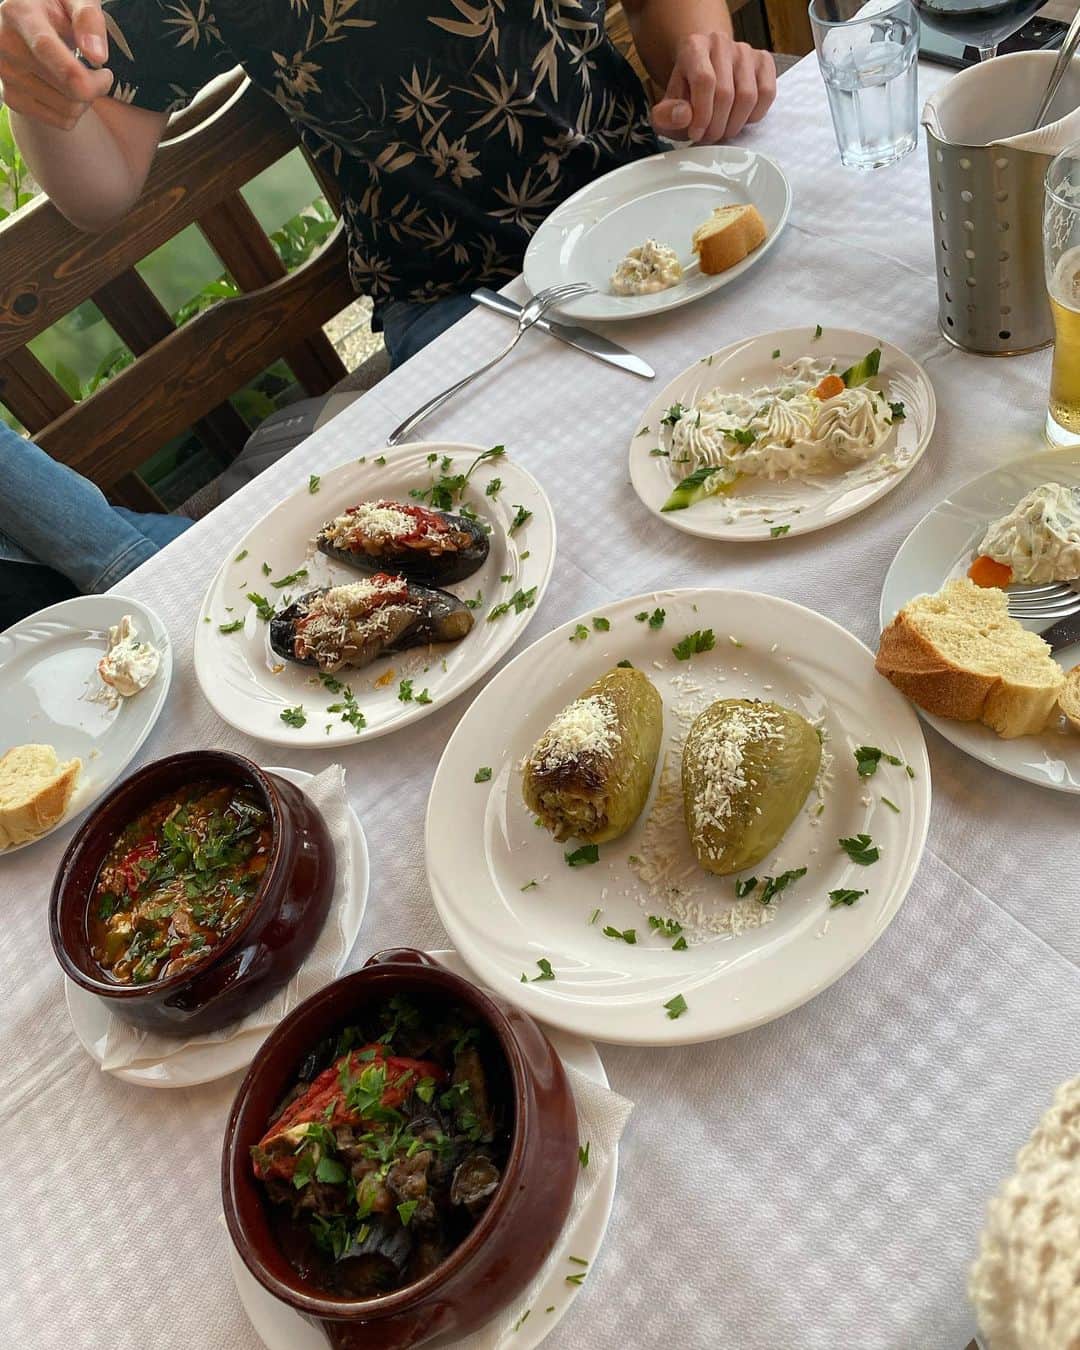 植村麻由さんのインスタグラム写真 - (植村麻由Instagram)「バルカンひとり旅 番外編🍽️ 旅の目的のひとつであり醍醐味でもある、現地のご飯。 今回の旅でもたくさんトライしたので、その一部を紹介しまっす！ ①Selsko Meso🇲🇰 マケドニア語で田舎風肉という意味らしい伝統料理。 キノコたっぷり、お肉もゴロゴロ、その旨みが滲み出た塩味ととろみが絶妙なスープ… この旅で個人的いちばんのヒット！ ②豆のスープとマケドニアンサラダ🇲🇰 どっちもハズレ。 マケドニアっぽいな(適当)と思って頼んだら、スープはどろどろでほぼ味なし、サラダは生の玉ねぎ、ピーマン、トマトがごろごろでこちらもほぼ味なし😆 口の中がしばらく玉ねぎだった😆 こういうハズレを引いちゃうときもあるのが旅の醍醐味！ ③ブレク🇲🇰 オスマン帝国の影響を強く受けているバルカン諸国ではよく見られる、朝ごはんの定番料理。 パイ生地で挽肉やチーズなどを包んで焼いたもので、文字通り、見た目通りヘビー。 今回はマケドニアで挽肉入りを食べたけど、アルバニアでもコソボでも見かけました。 コソボのホテルではチーズ入りが朝食に登場！ これを食べればお昼ごはんいりません。 ④ムサカ🇲🇰 日本ではギリシャ料理として有名？なムサカ。 今まで食べたことのある、ナスやマッシュポテト、挽肉を重ねたものとは全くの別物で、名前変えたほうがいいのでは…？と思うほど。 スライスしたじゃがいもと挽肉、卵、米に、トマトソースではない優しい味のソース(何ベースなんだろう)という、日本人も絶対好きなお味でした。 ⑤マケドニアの出汁🇲🇰 メニューに英語でMacedonian broth と書いてあって気になり注文。 野菜と挽肉の旨みが滲み出たスープに少しのお米が入っていて、優しくて美味しかった〜！ 二日酔いの日に飲みたい。 ⑥,⑦アルバニア伝統料理たち🇦🇱 サワークリームにピクルスやハーブが入ったスターター、ナスのオーブン焼き、ピーマンにお米を詰めて焼いたもの、ラムの煮込み、ナスとチキンの煮込みなど… ベラトの宿がいっしょで色々助けてくれたドイツ人カップルといろんな種類の伝統料理にトライ。 全部びっくりするくらい美味しくて、重くないけど食べ応えはあって最高でした。 1人だとこんなに種類頼めないから嬉しかったな〜！ ⑧ミートボール🇦🇱 メニューにBerat traditionalと書かれていた、ミートボールのオーブン焼き的なやつ。 想像通りの美味しさで当たり！ パンとビールが進んでしまうお味でした。 ⑨Japrak🇦🇱 お米とハーブをブドウの葉で巻いた伝統料理。 さすがにお肉以外が食べたくなり(内陸の山岳部なので名物料理がお肉ばかり)、こちらをチョイス。 食べたことない不思議な味だったけど完食しました。 それよりも後ろのクラフトビールが美味しかった！ そして500mlで400円ほどとコスパ最強！ ⑩チェバプ🇽🇰 呼び方は国によって若干違えど、バルカン諸国やトルコなどでよくみられるこの地域の伝統料理。 ミンチ肉にスパイスやハーブを混ぜてグリルした、シンプルの極み料理。 5年前にボスニア・ヘルツェゴビナで食べた時も思ったけど、結構しょっぱくて飽きやすいのに付け合わせの野菜とピタパン(とビール)がついつい進んでしまうという、魔法のグリル肉。  という感じで、日本人にはあまり馴染みのないバルカン諸国のご飯の一部を勝手に自己満紹介でした✌️ 素材を活かしつつもスパイスやハーブがたっぷりなものが多くて、個人的に好みなものが多かったな〜！ 次は海沿いのほうに行ってシーフードをたらふく食べたい！」10月21日 19時35分 - oeufmayu